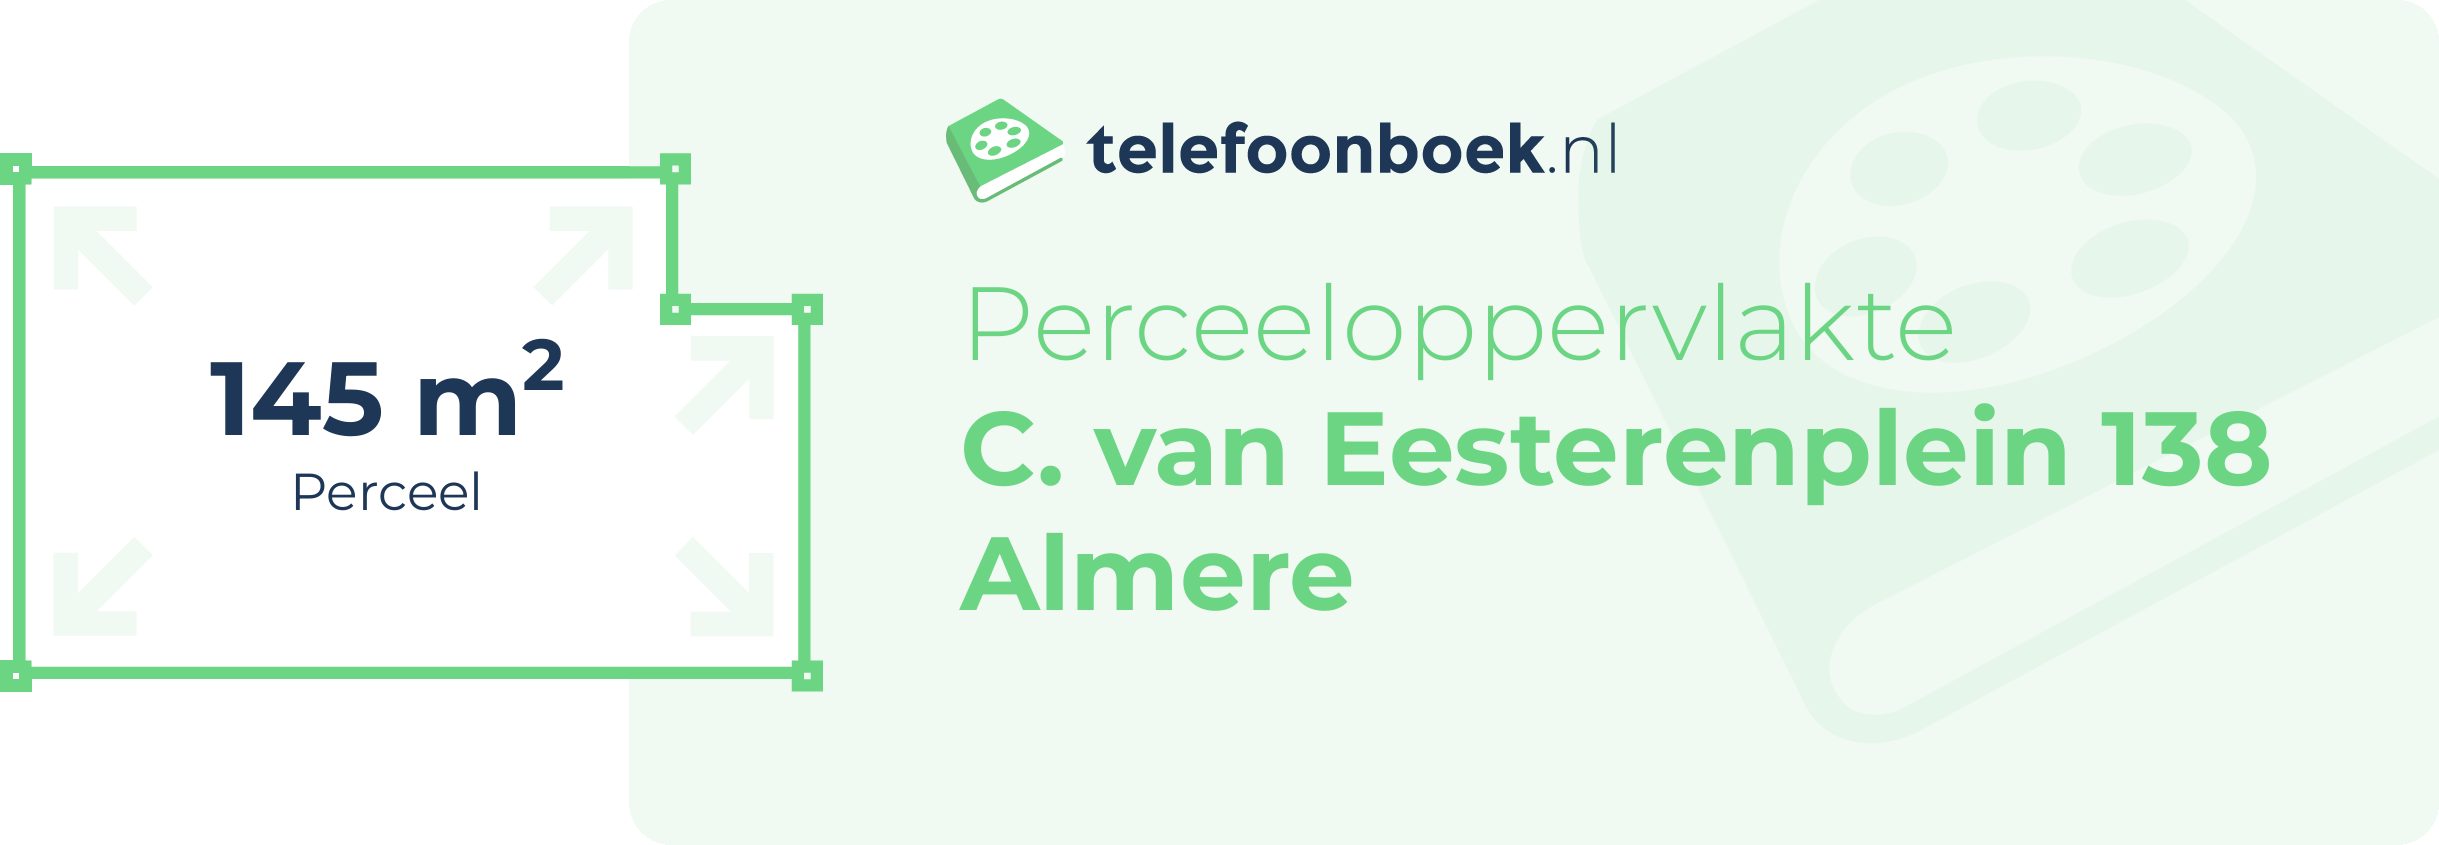 Perceeloppervlakte C. Van Eesterenplein 138 Almere